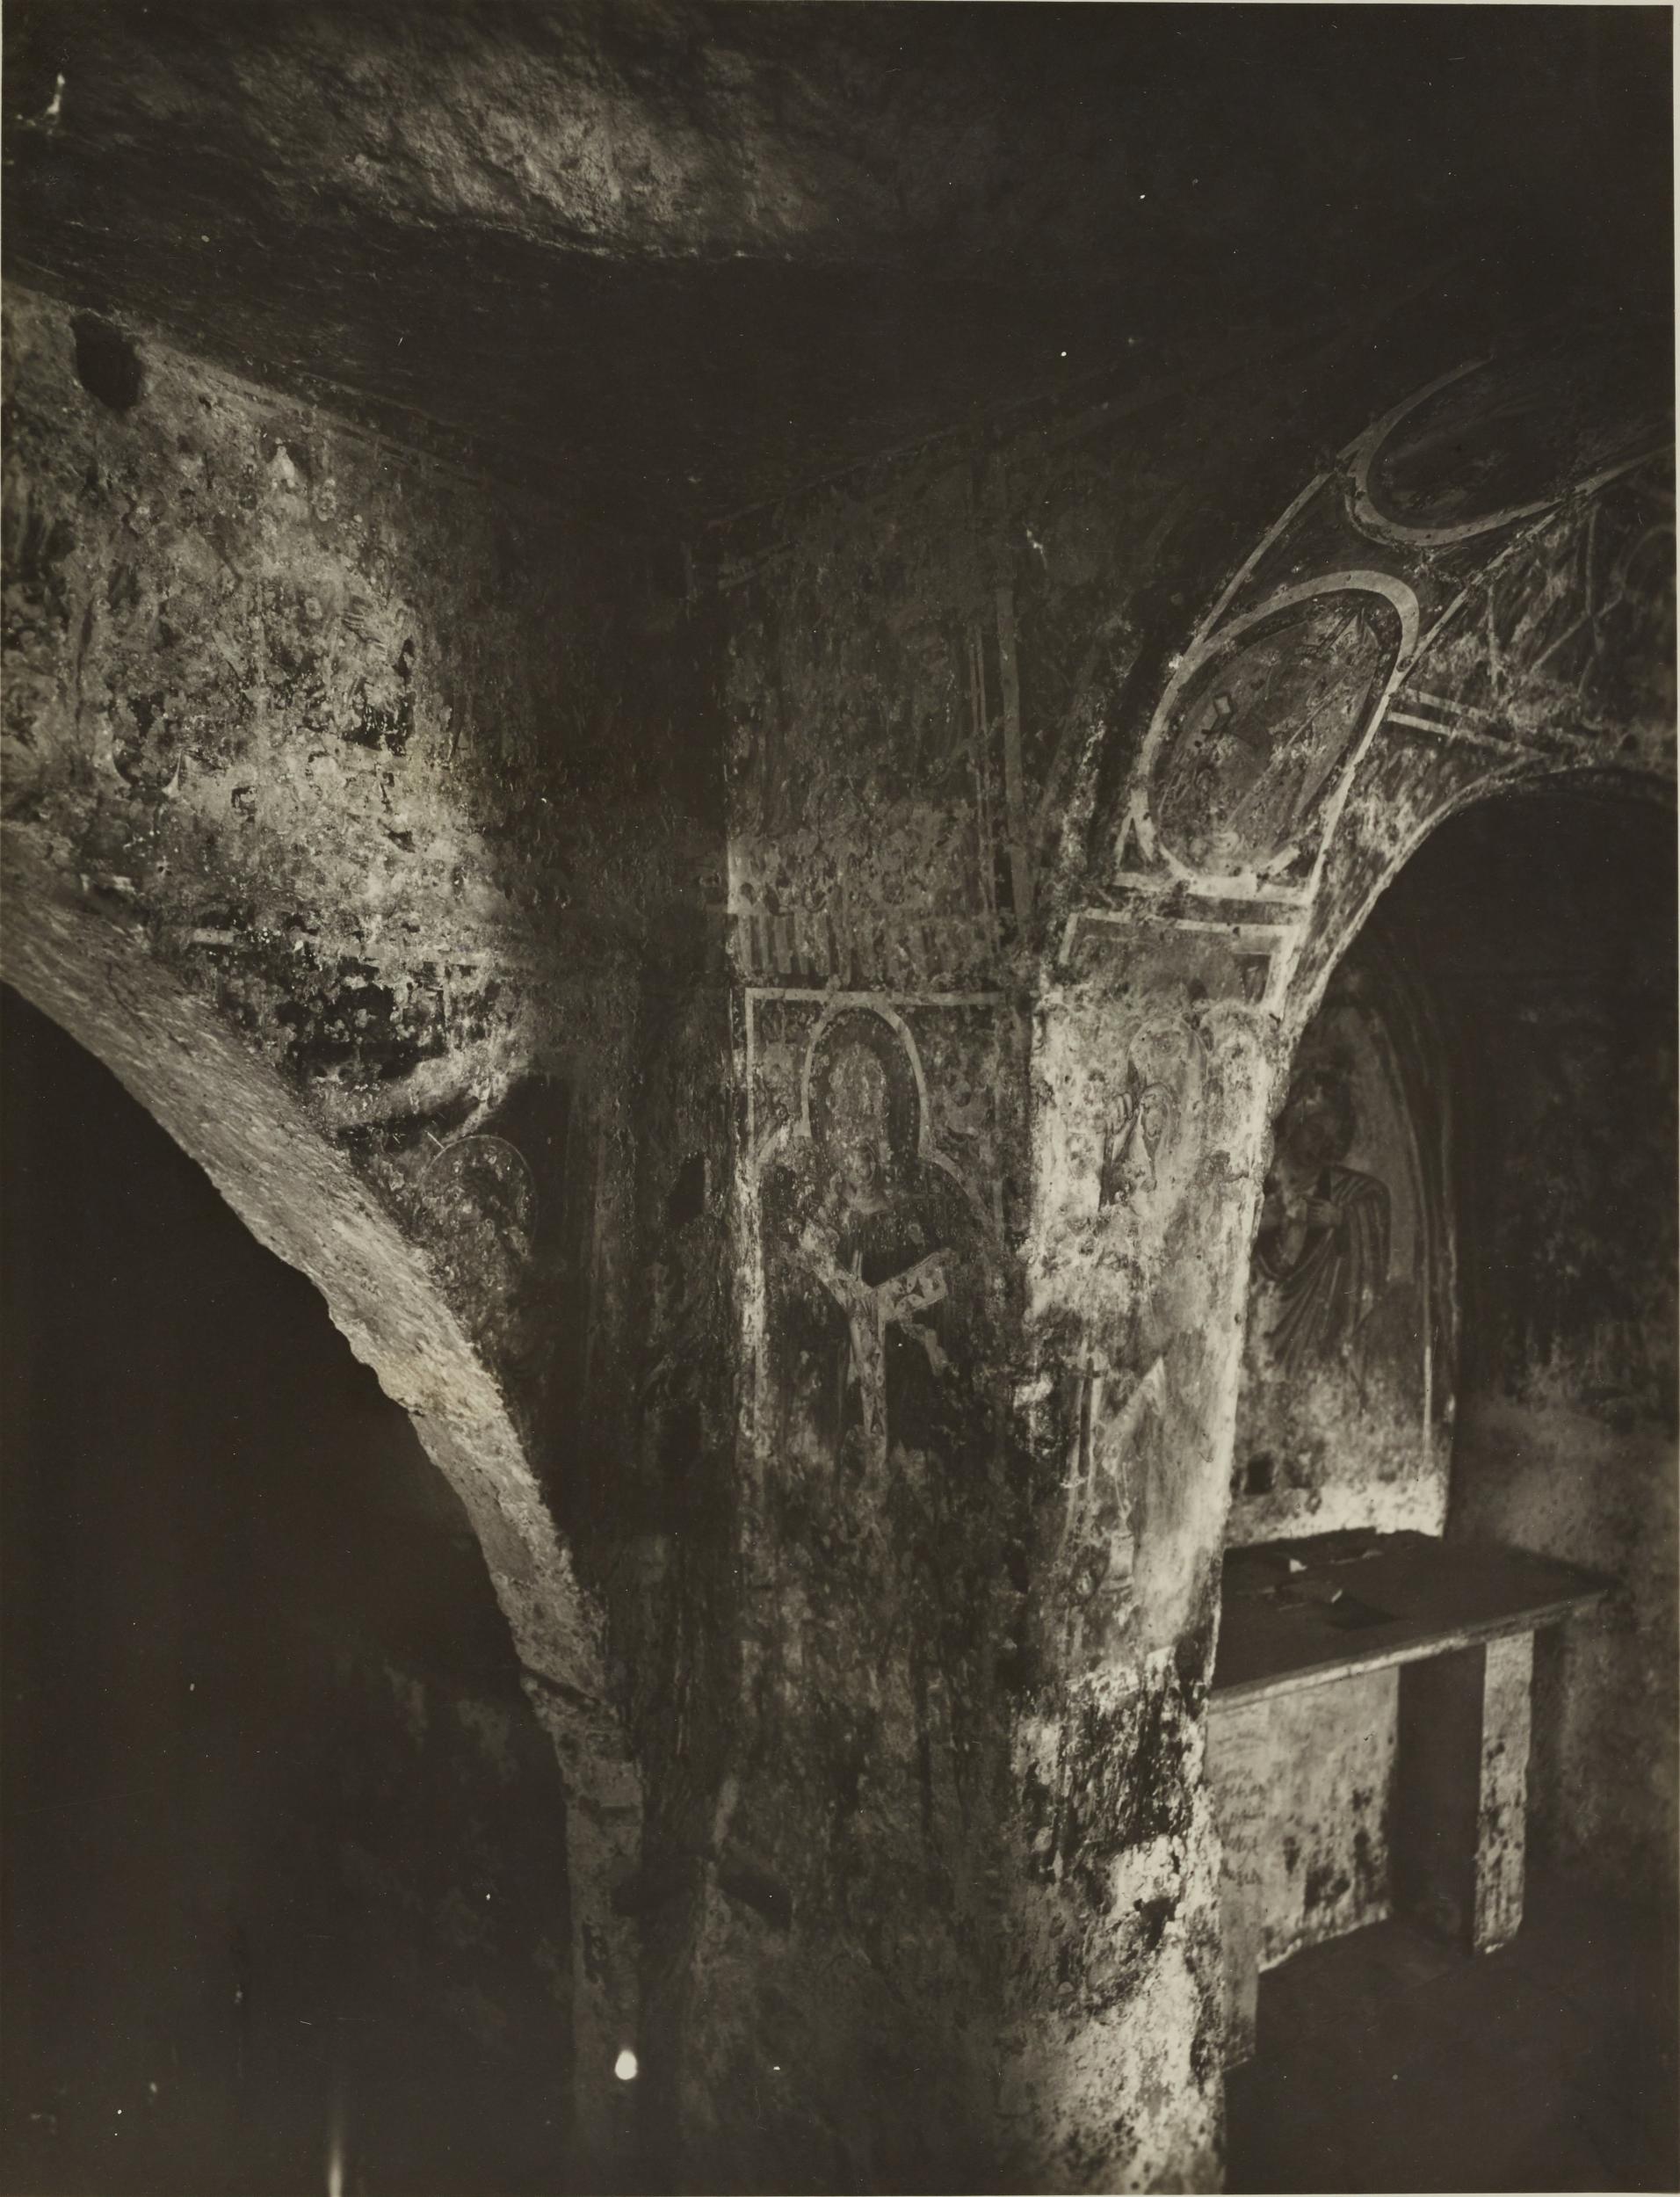 Fotografo non identificato, Andria - Chiesa di S. Croce, angolo navata centrale, 1926-1950, gelatina ai sali d'argento/carta, MPI131856